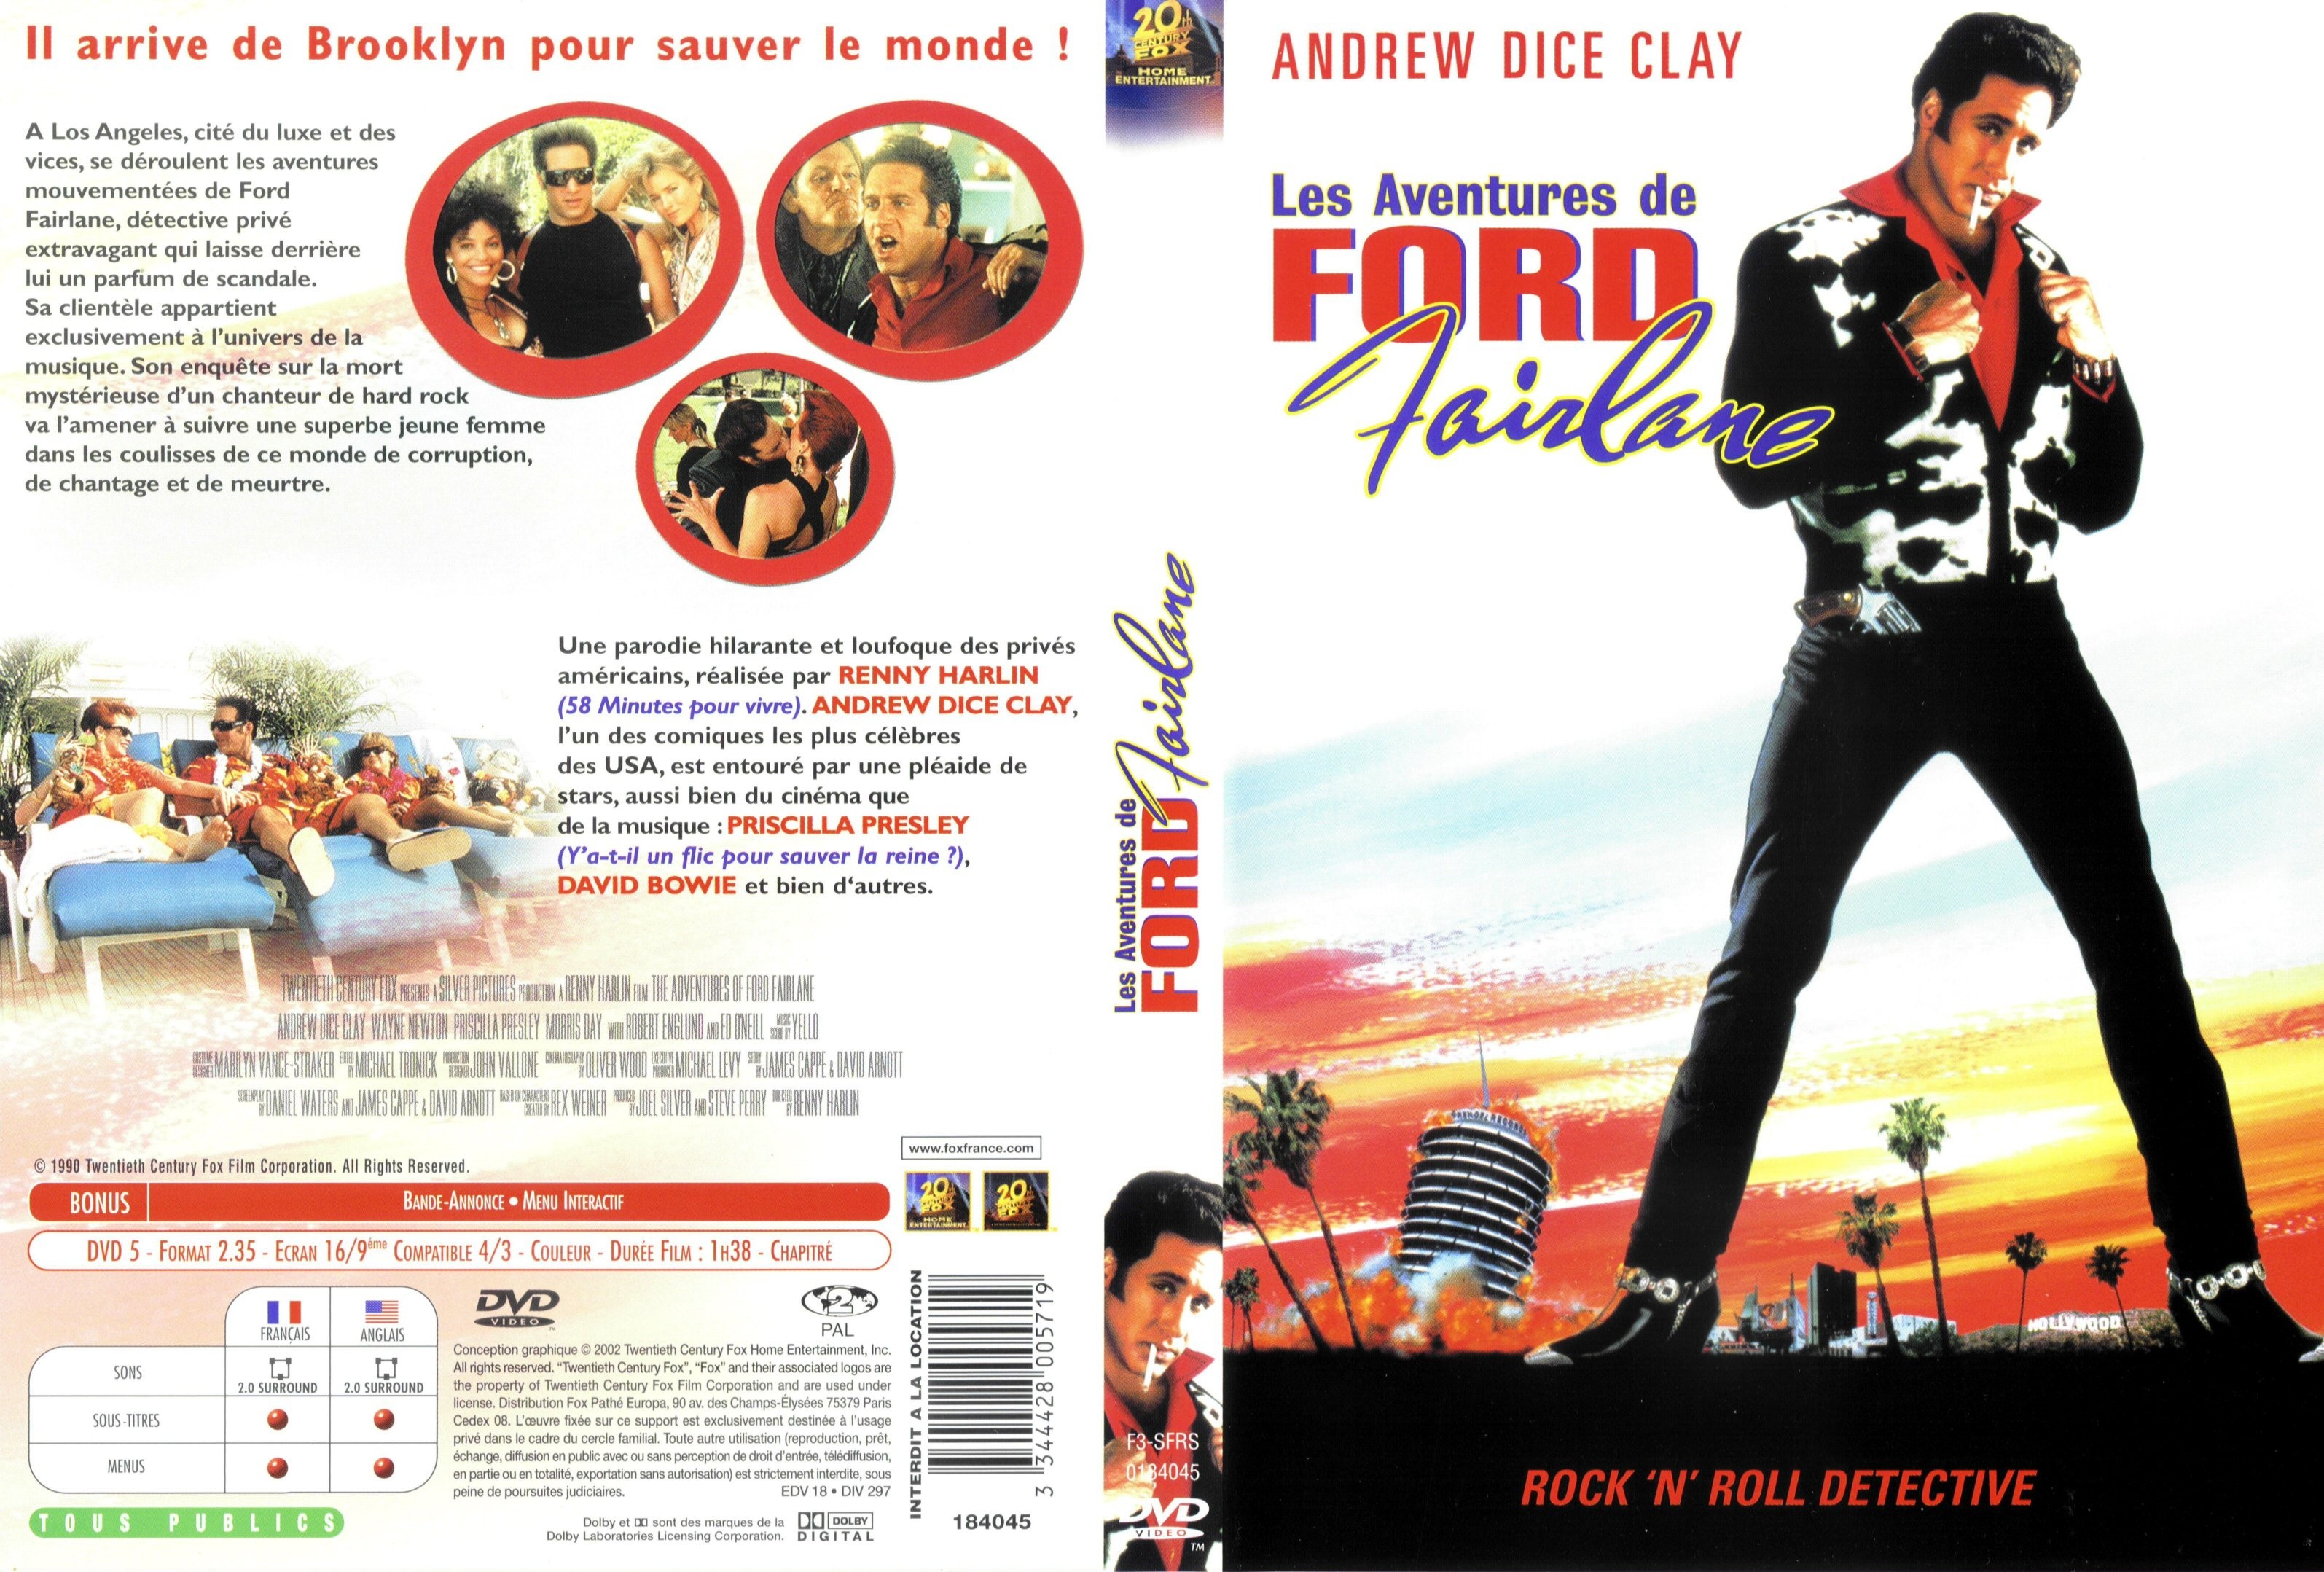 Jaquette DVD Les aventures de Ford Fairlane